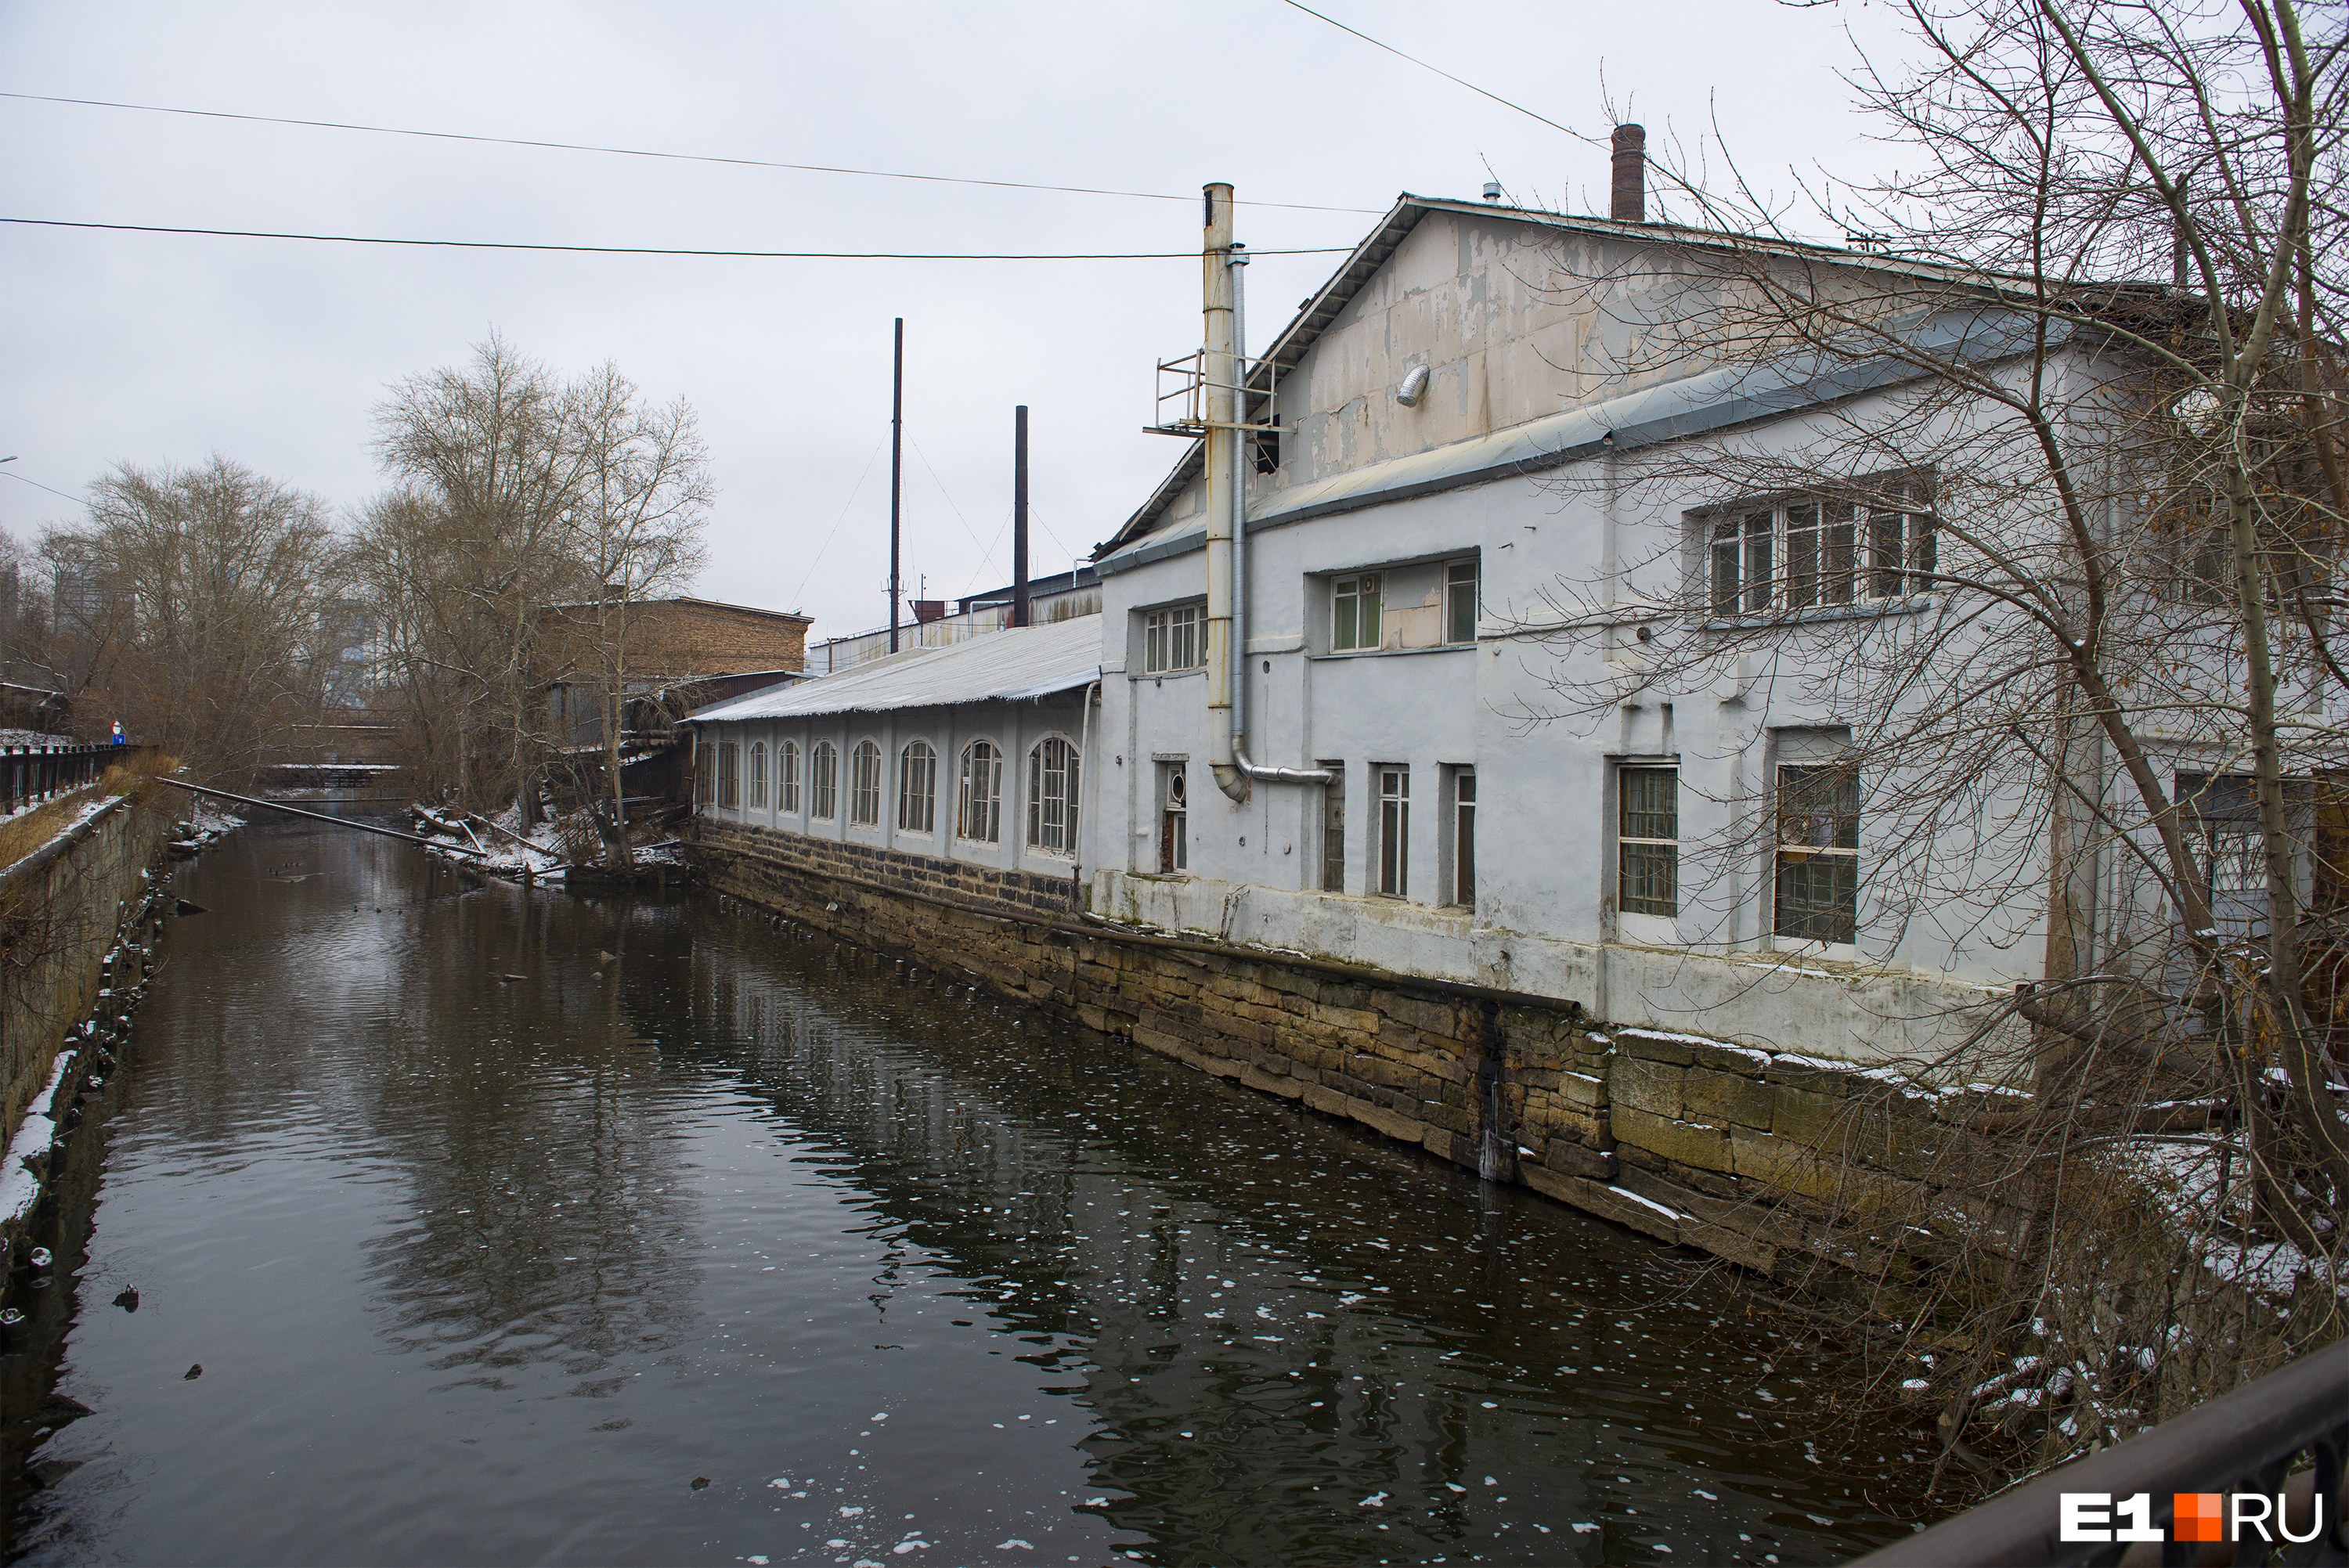 Фабрика плющильная с магазином листового железа, построенная в 1826 году